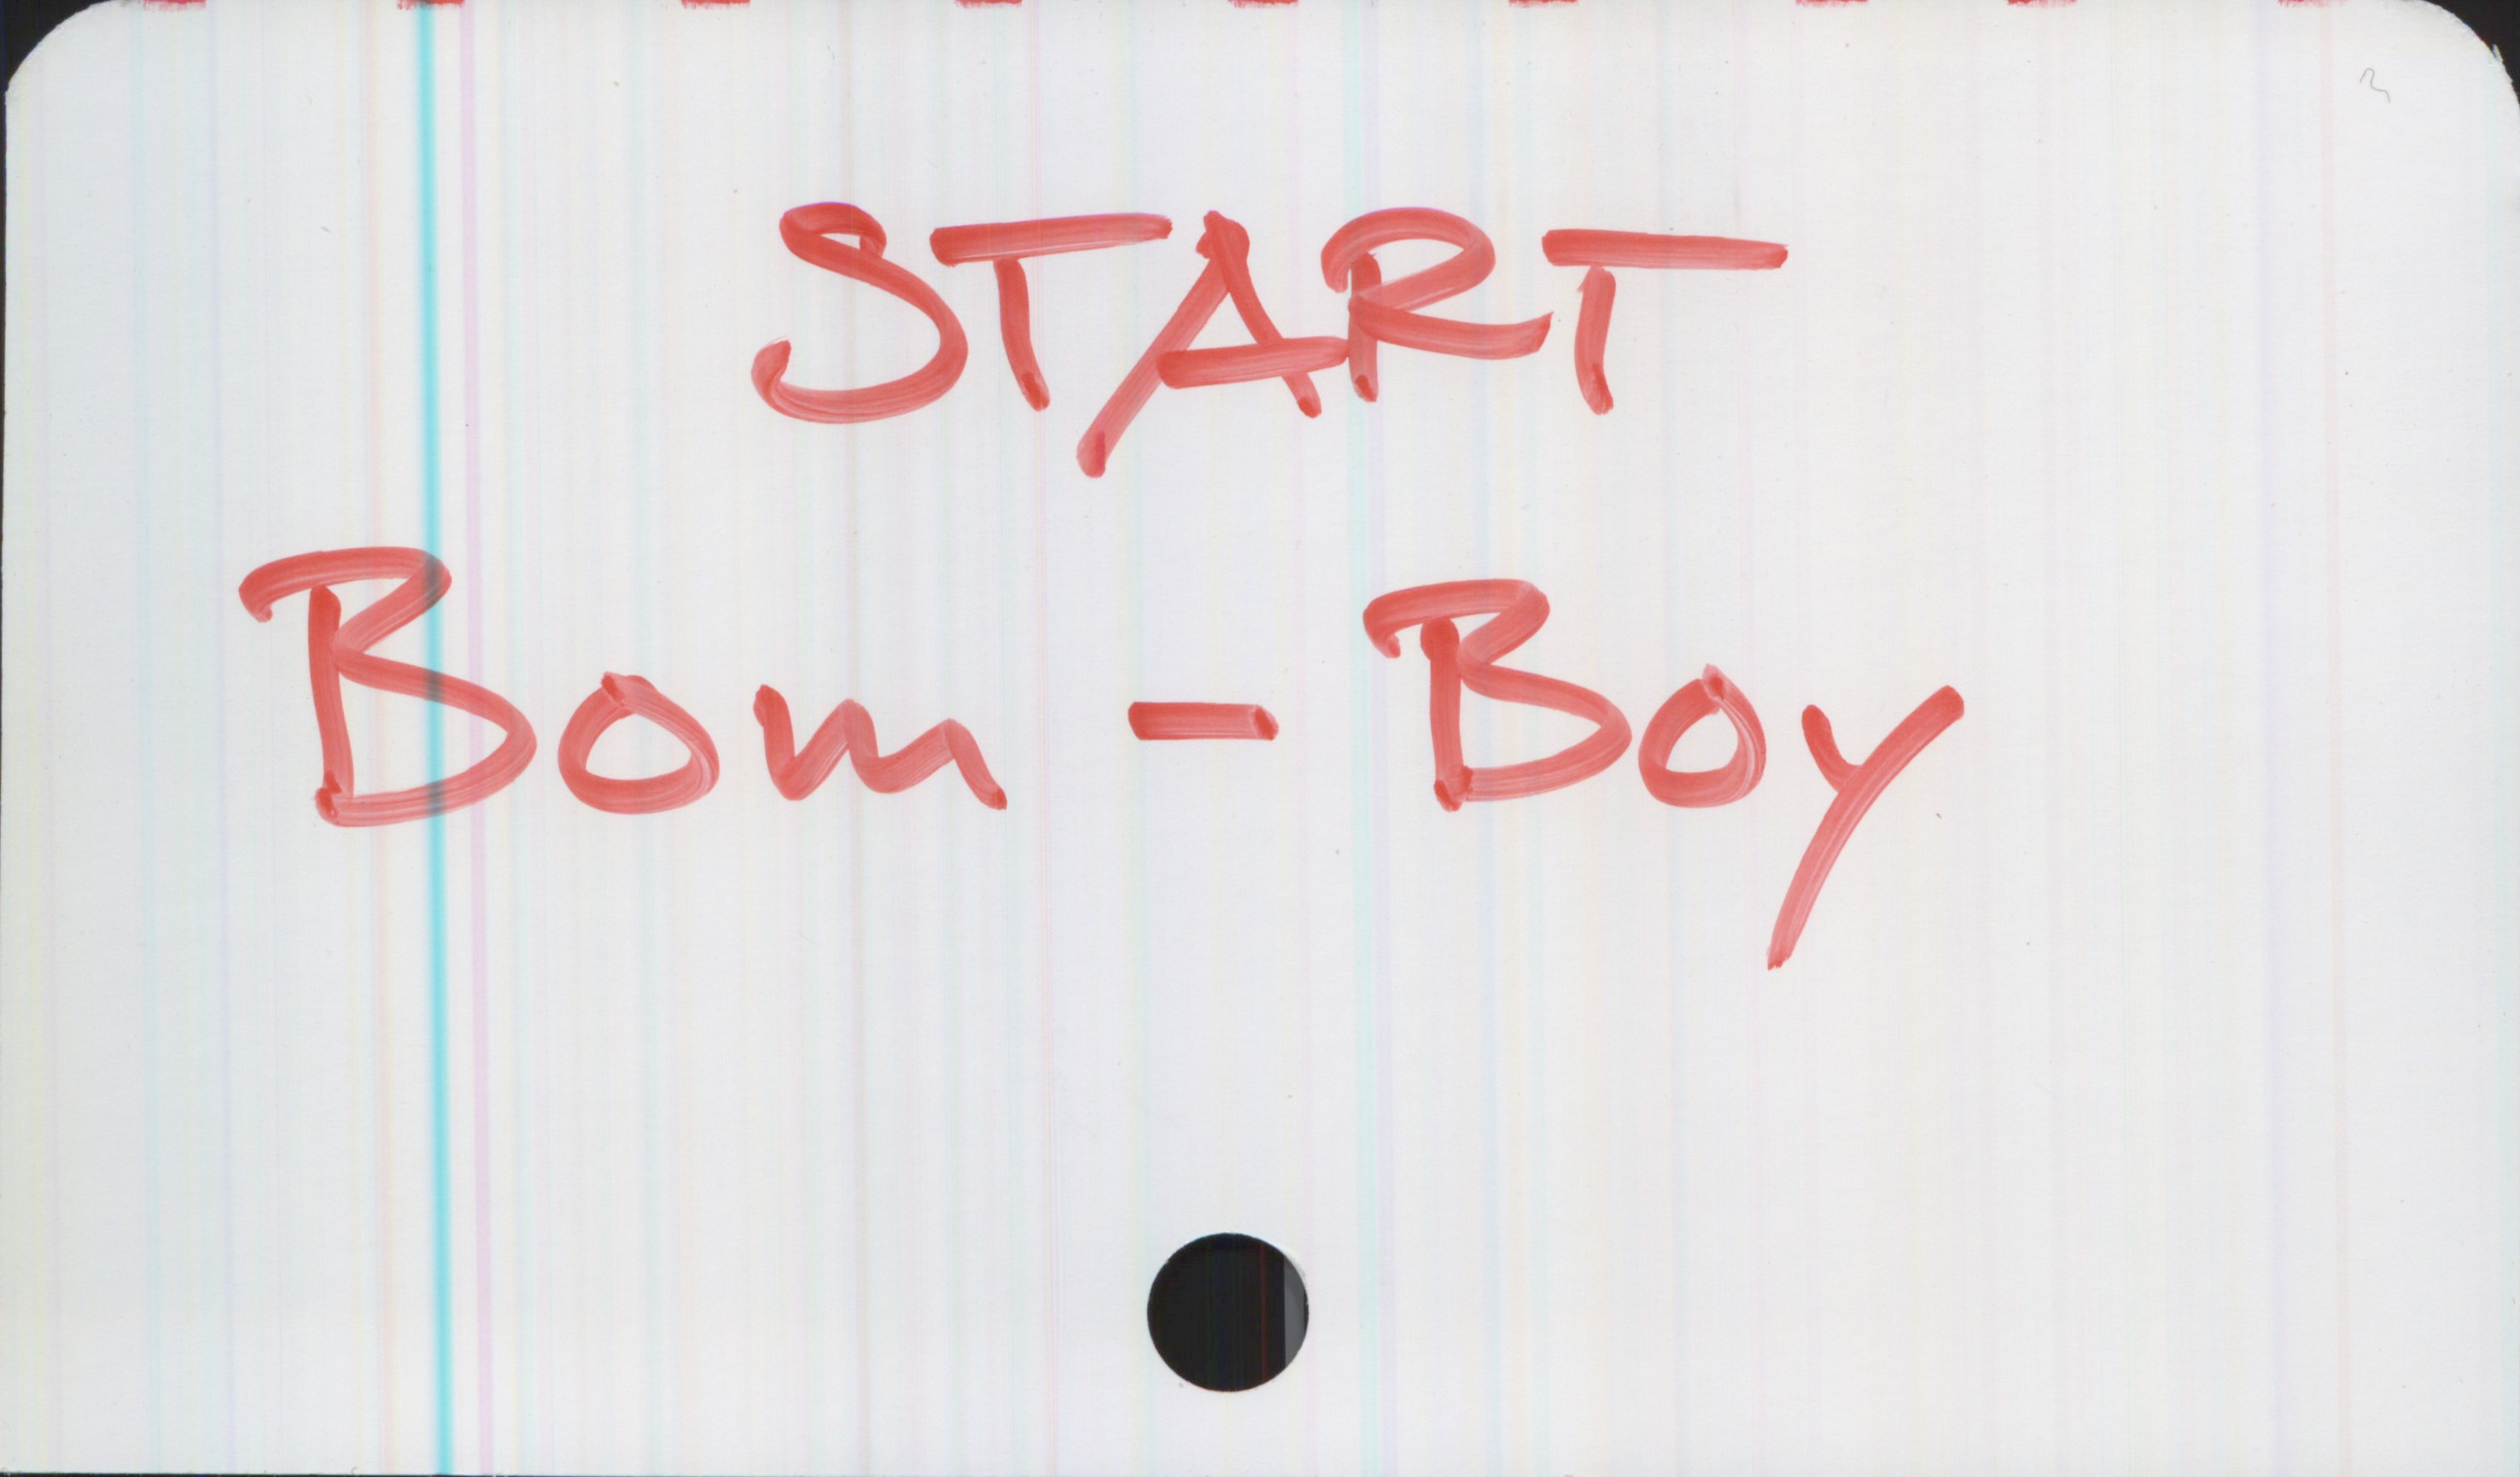 START Bom-Boy START 

Bom-Boy